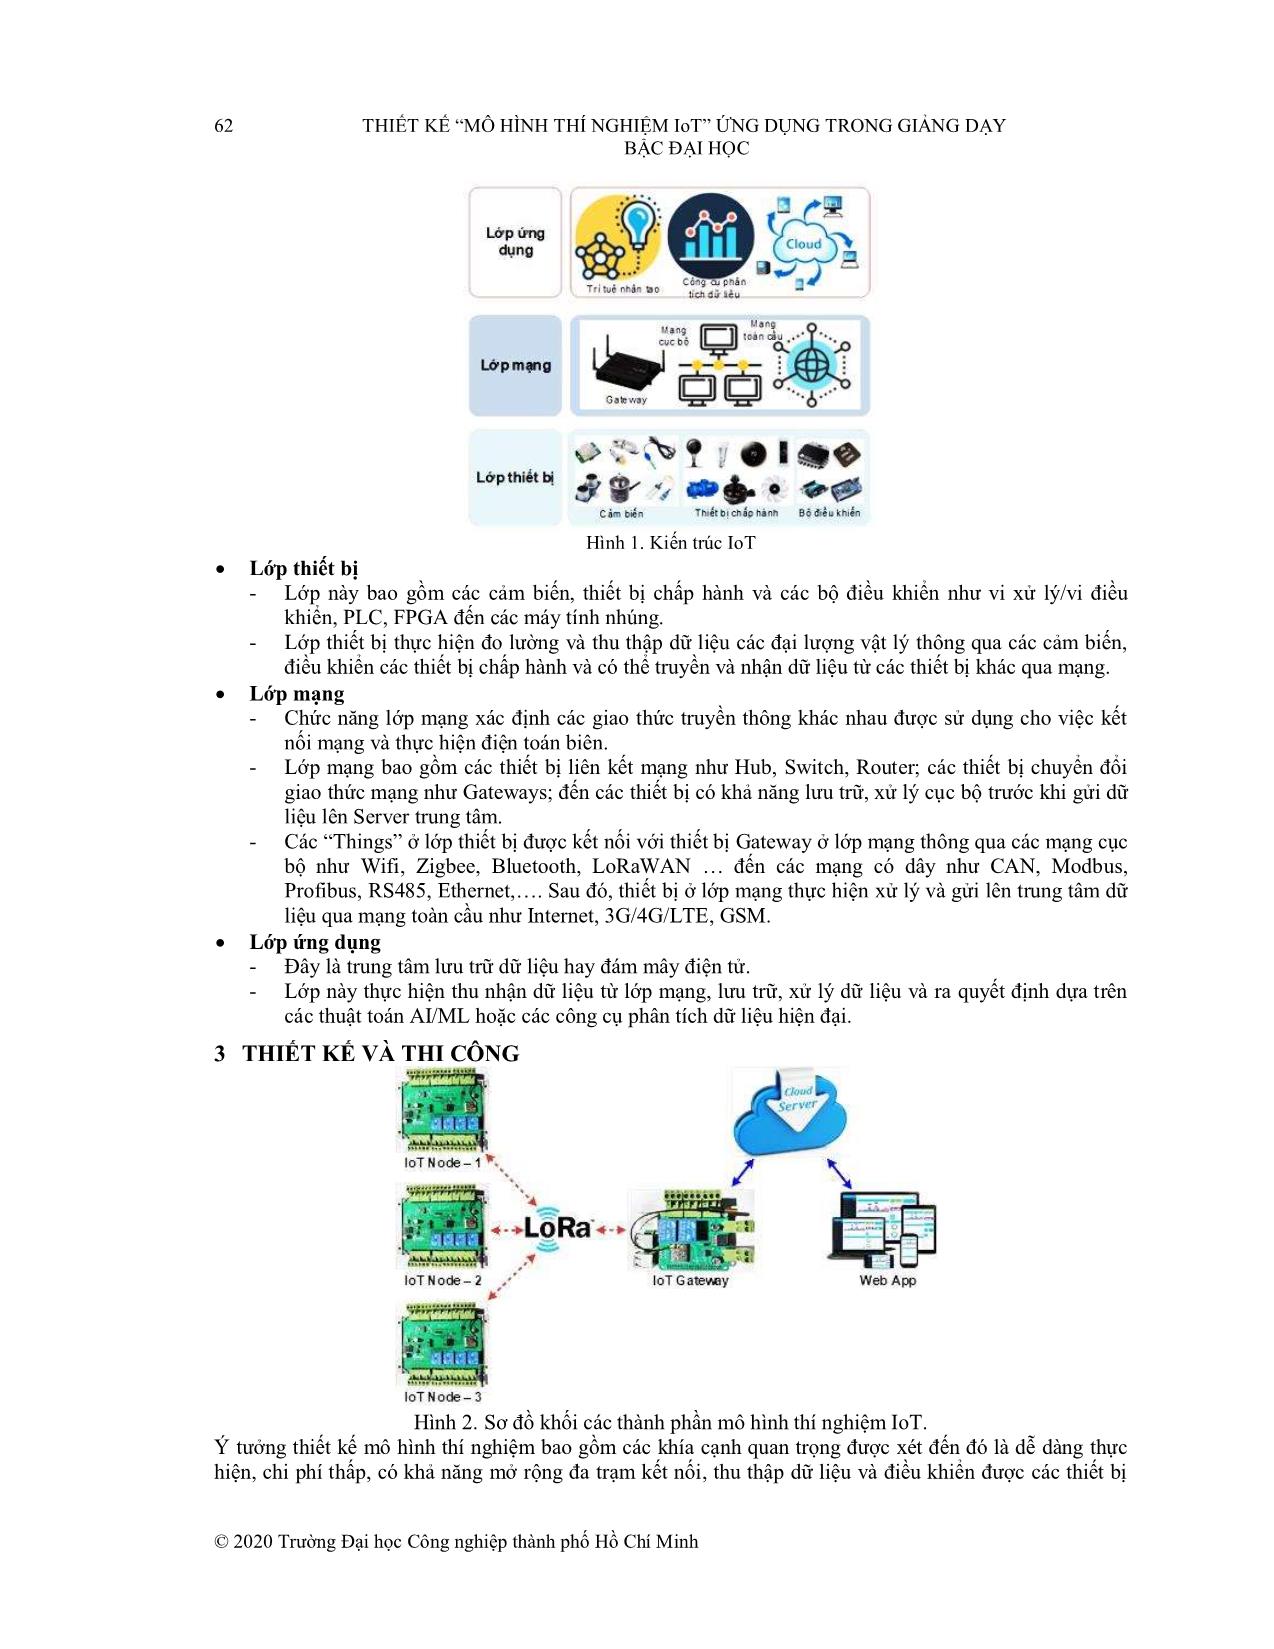 Thiết kế “Mô hình thí nghiệm IoT” ứng dụng trong giảng dạy bậc Đại học trang 3